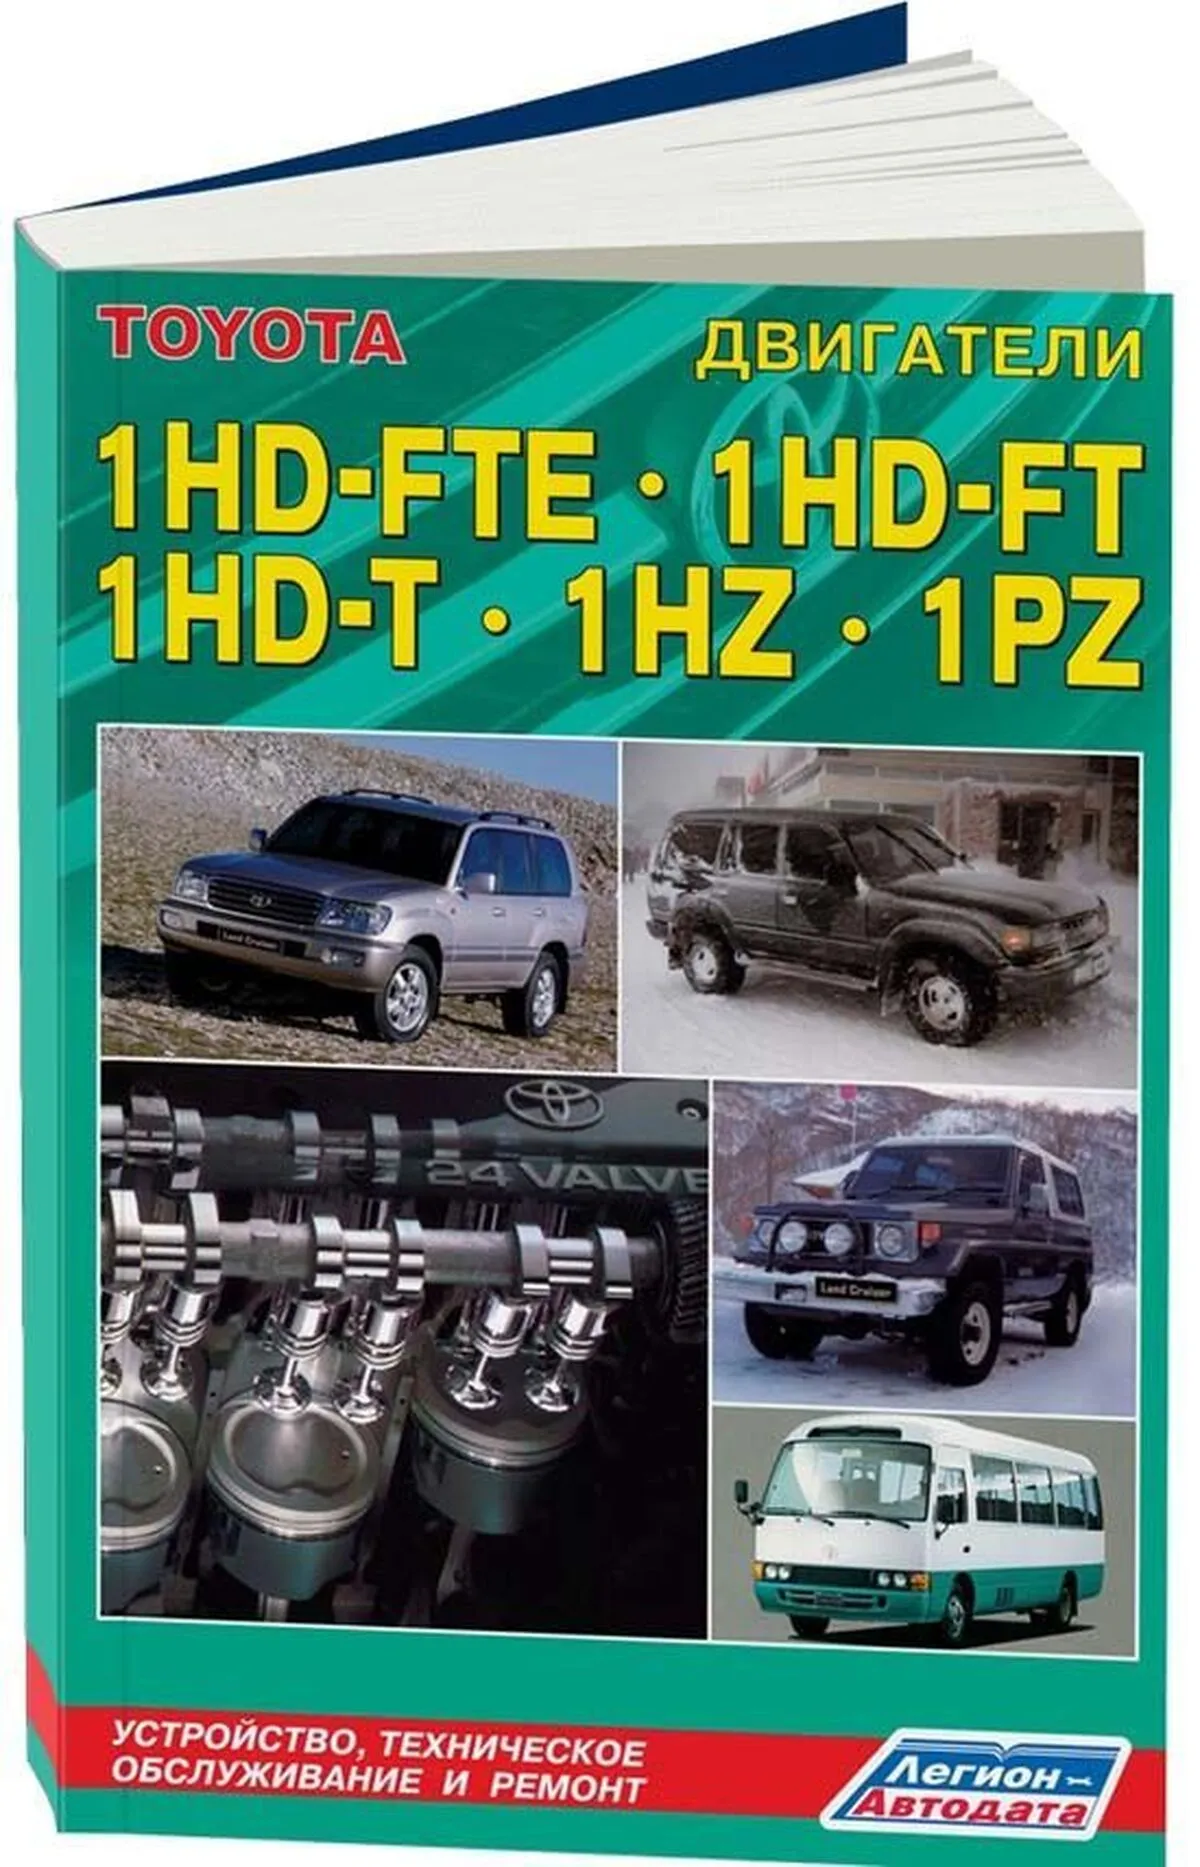 Книга: Двигатели TOYOTA 1HD-FTE / 1HD-FT / 1HD-T / 1HZ / 1PZ (д) | Легион-Aвтодата